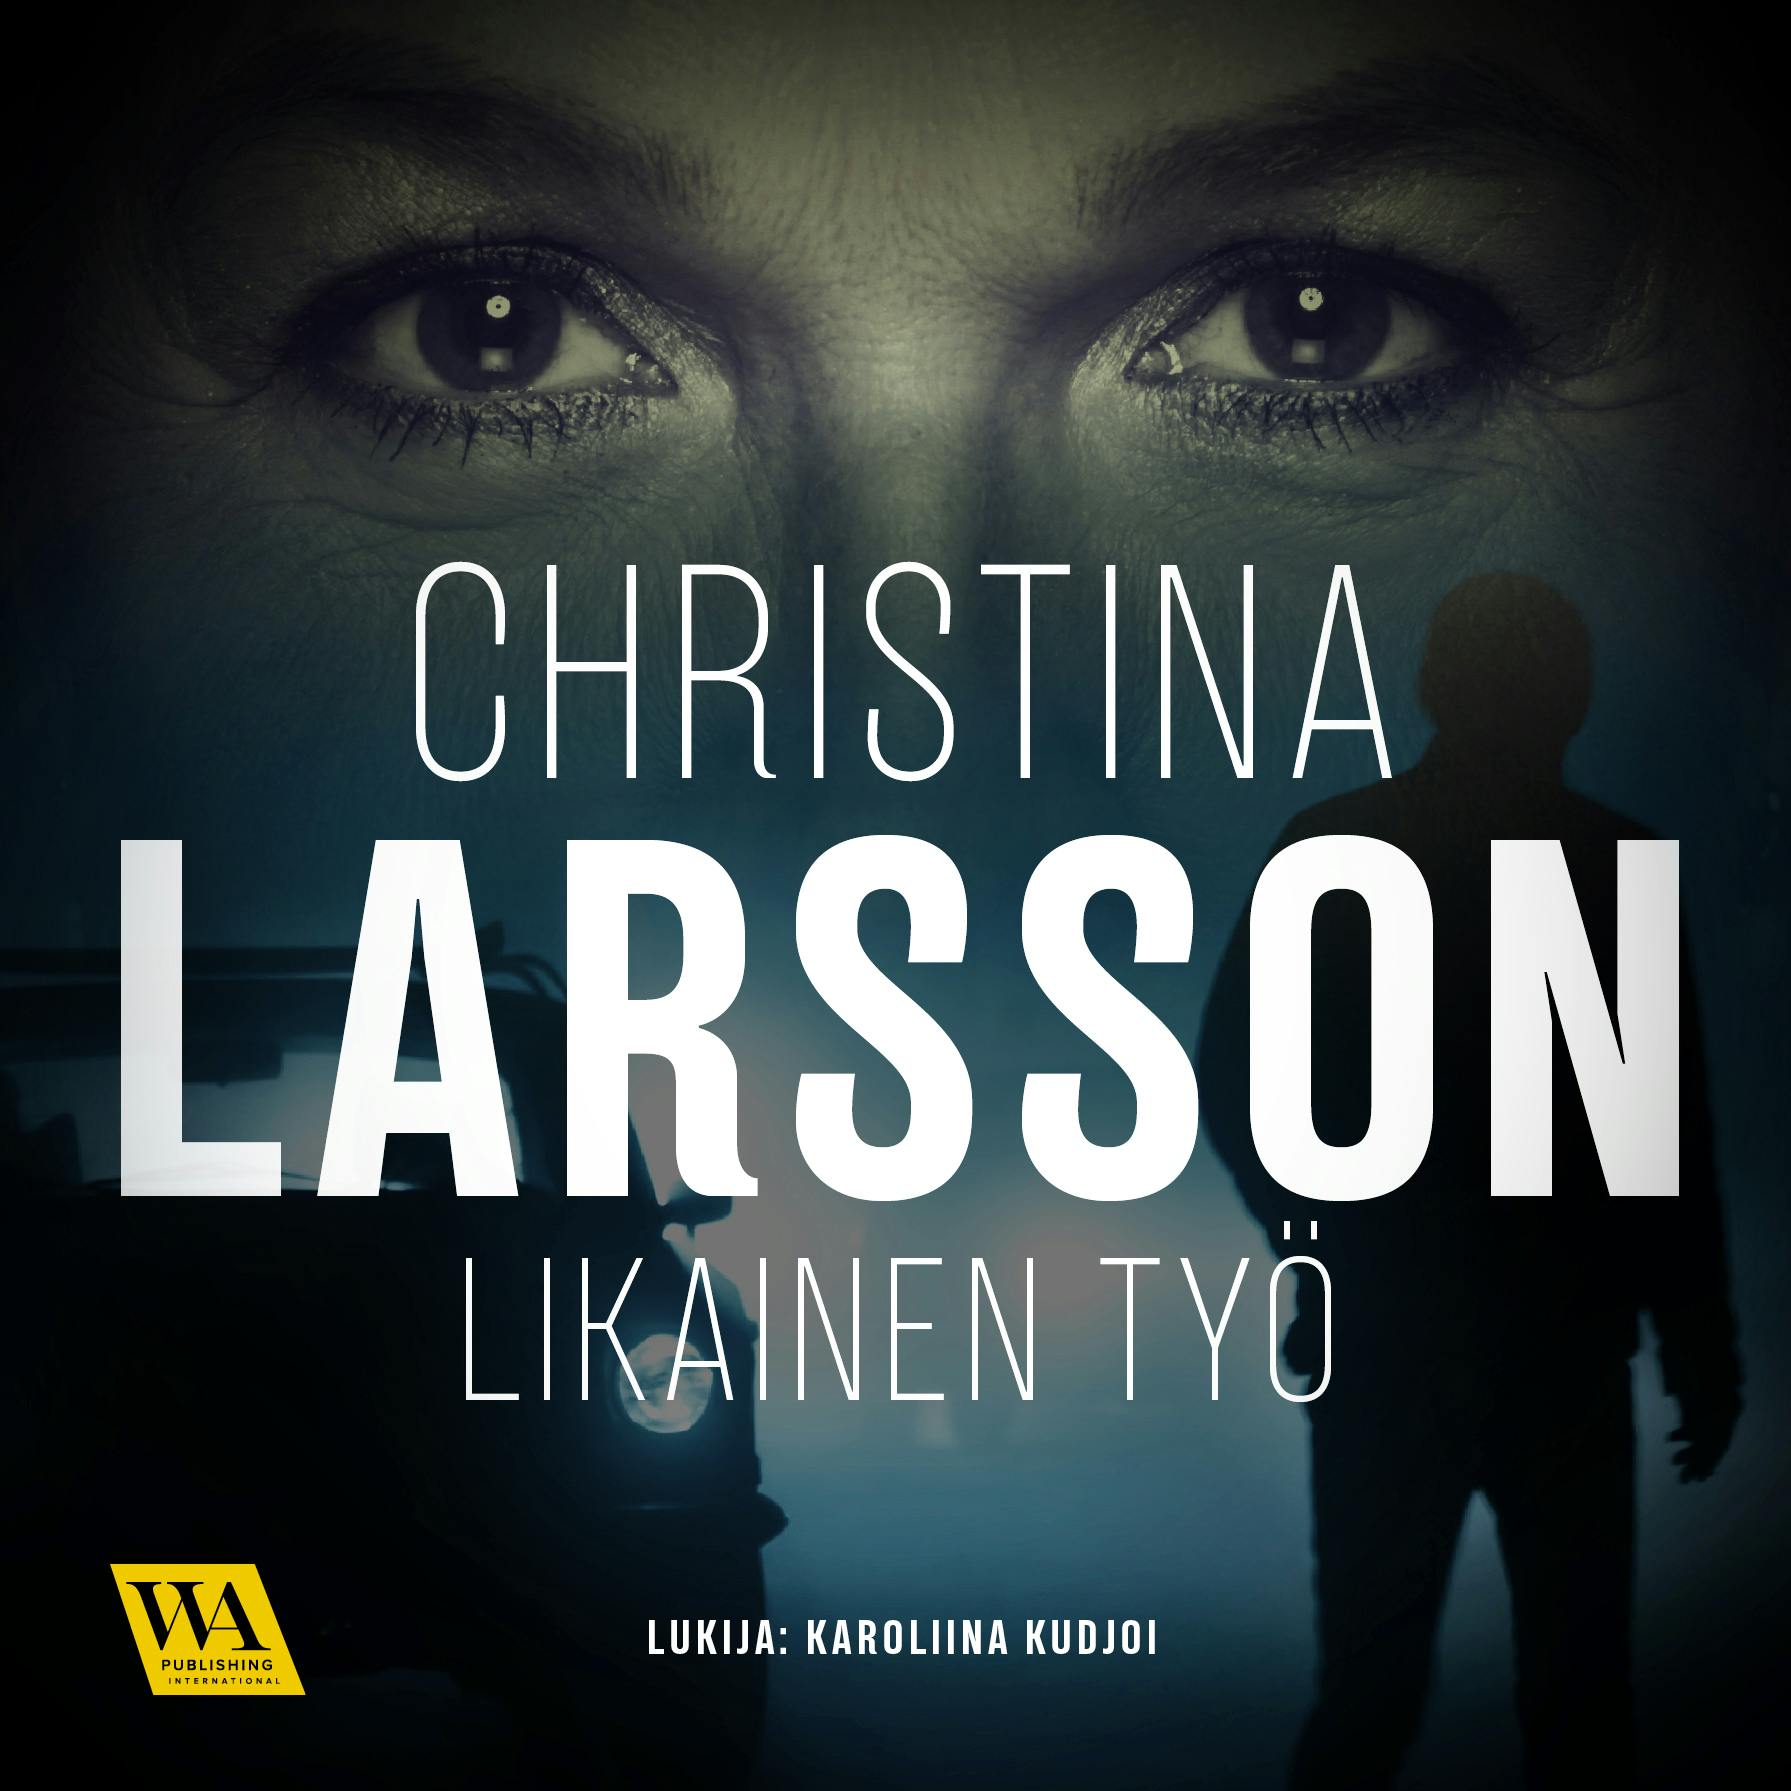 Likainen työ - Christina Larsson